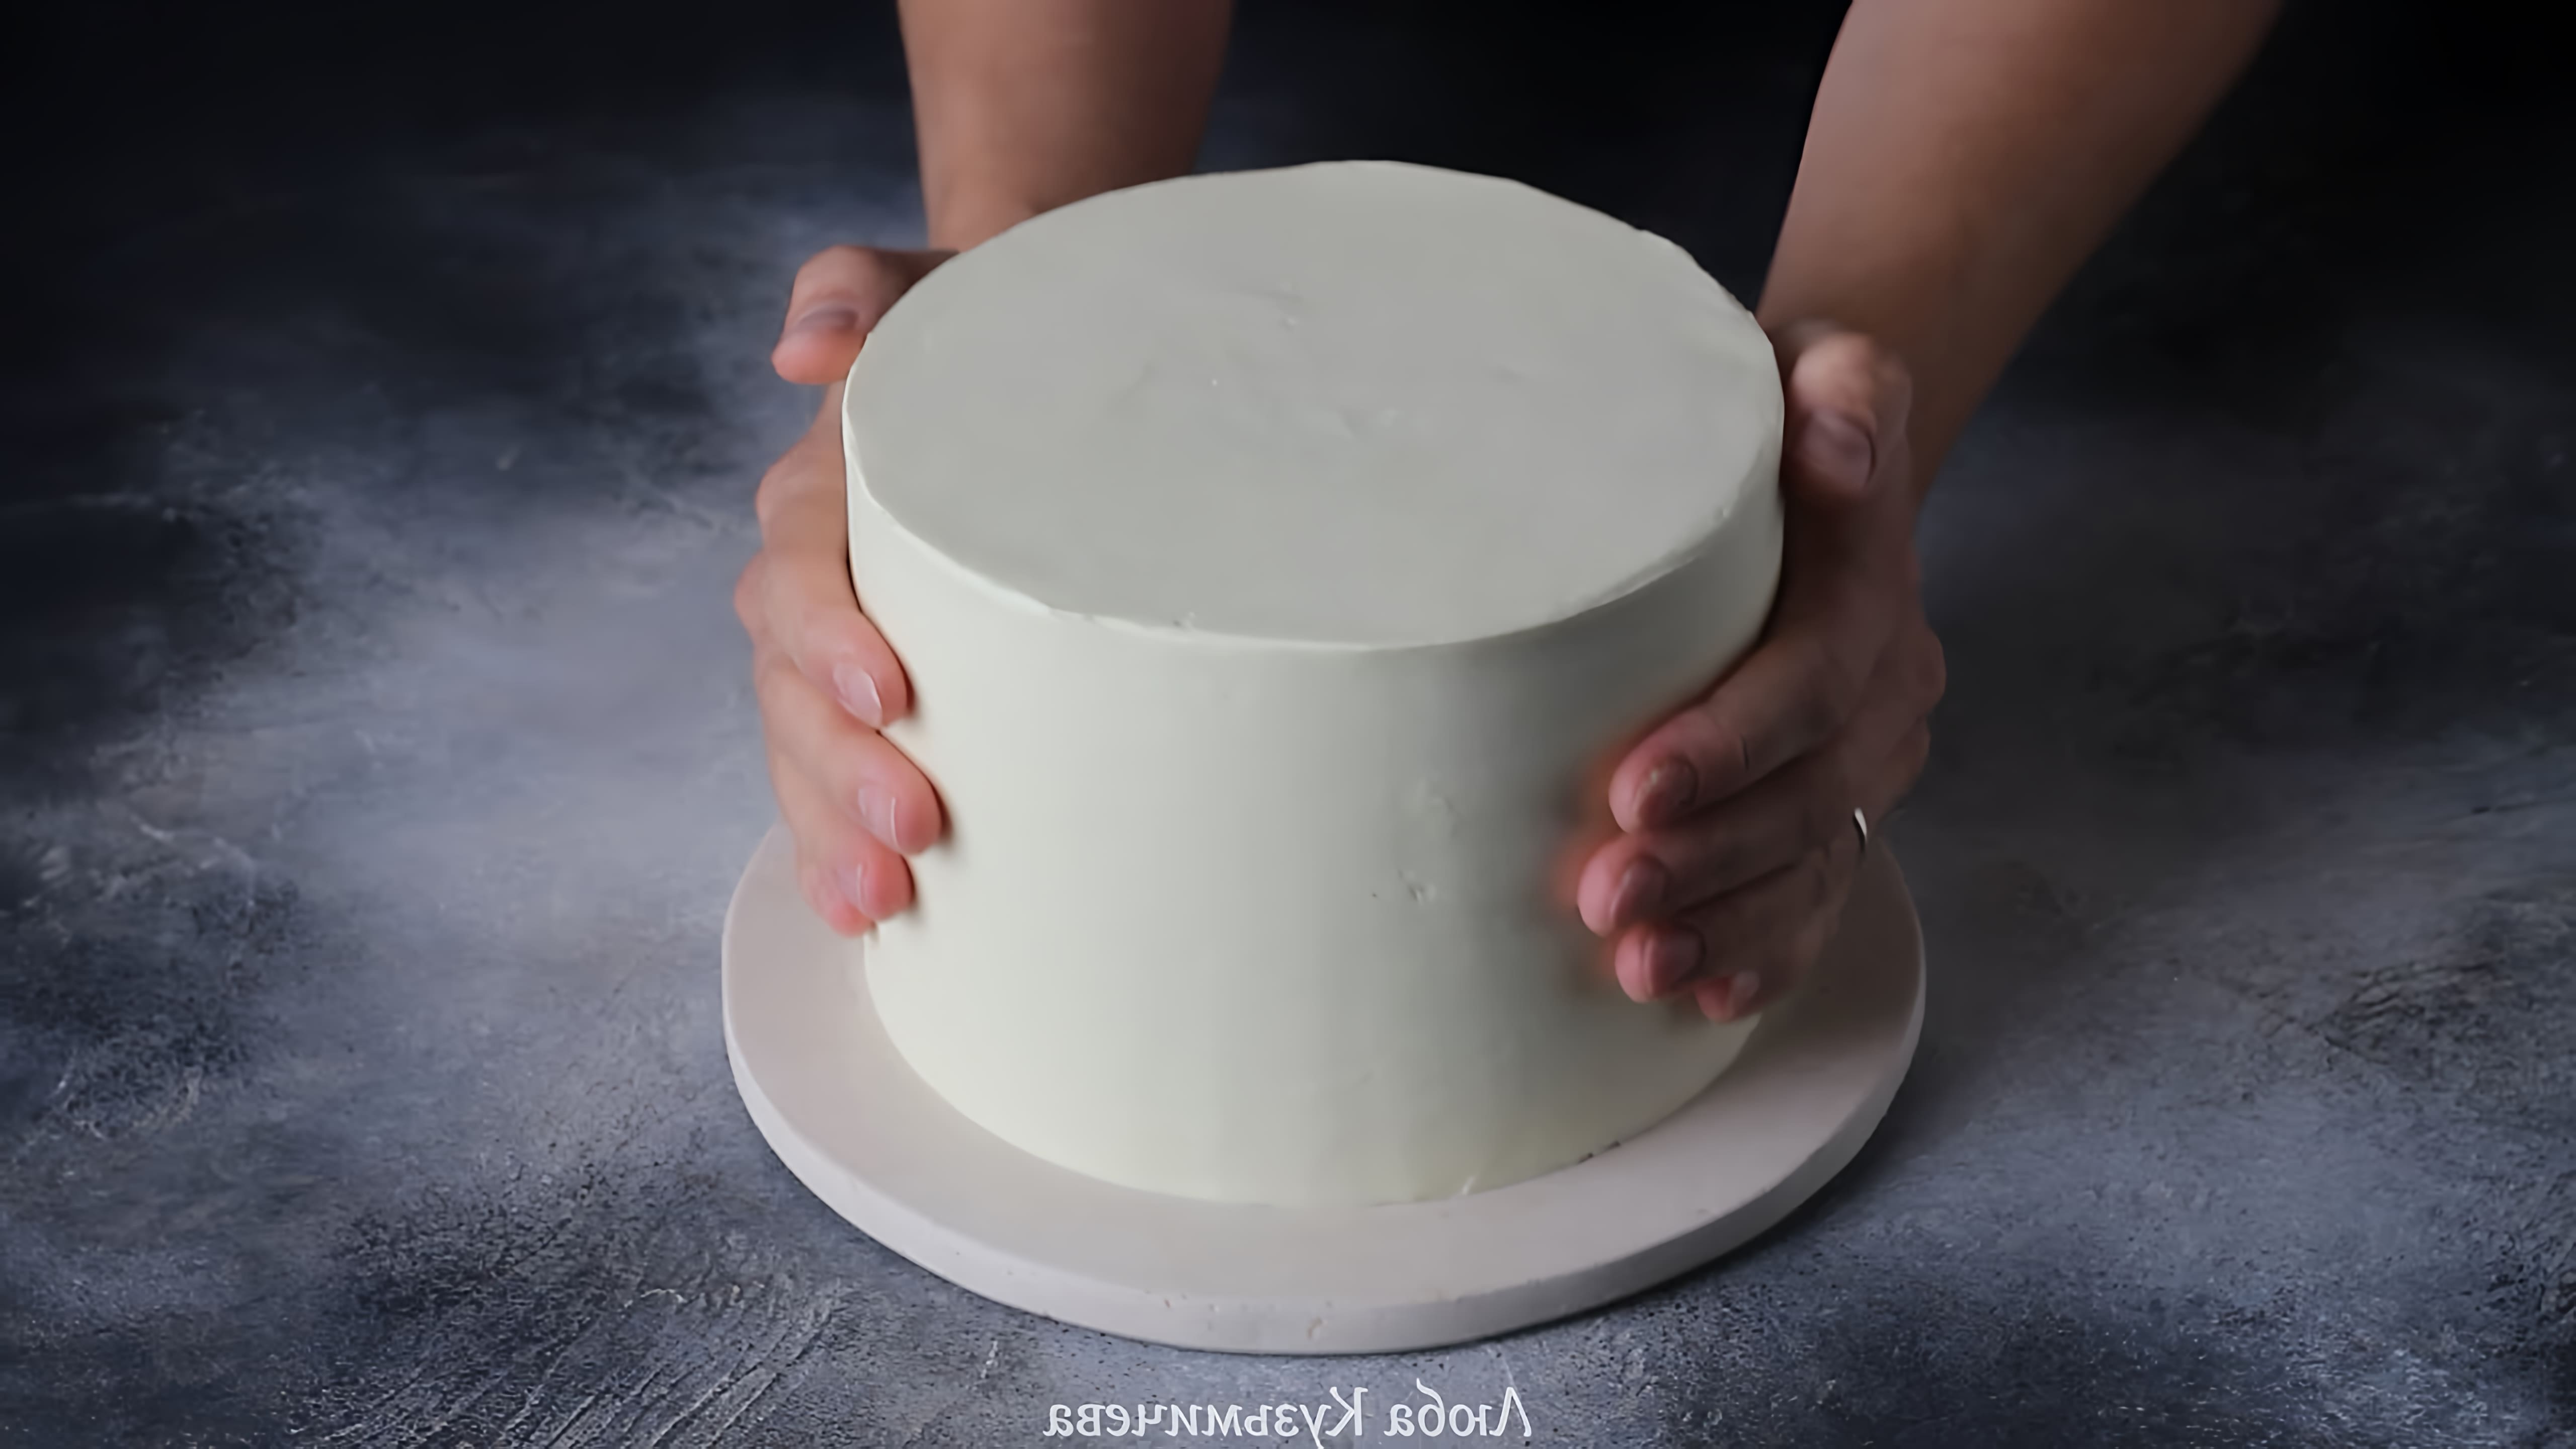 В этом видео показано, как приготовить ганаш на белом шоколаде для выравнивания тортов